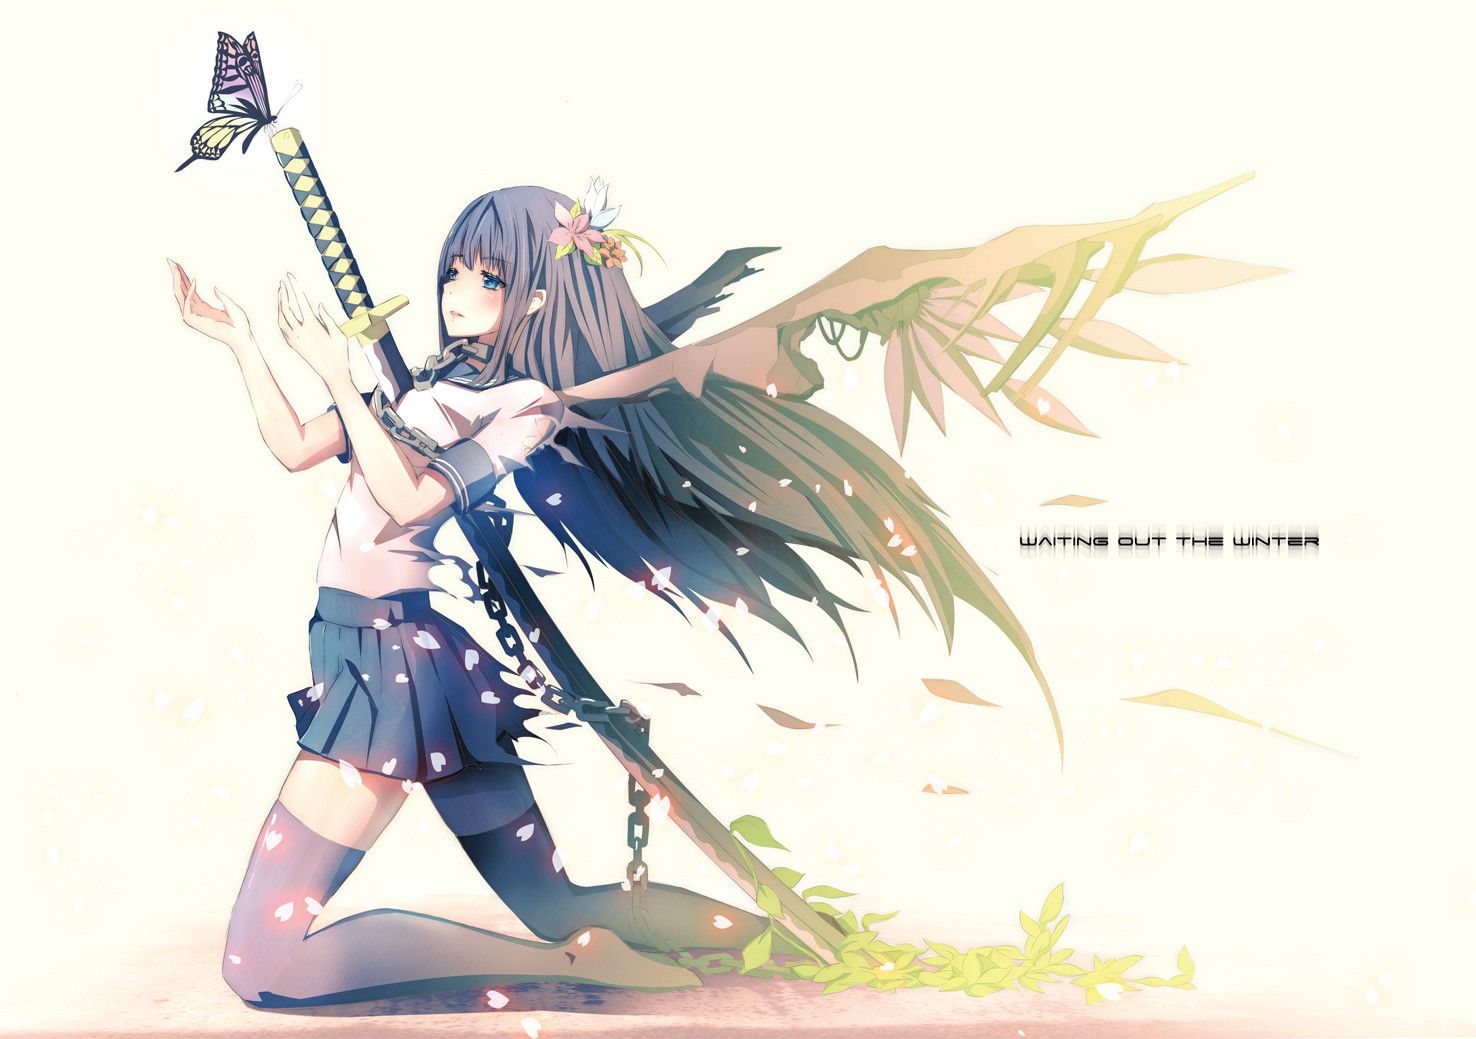 Anime Sword - Beautiful Anime Girl With Katana - HD Wallpaper 